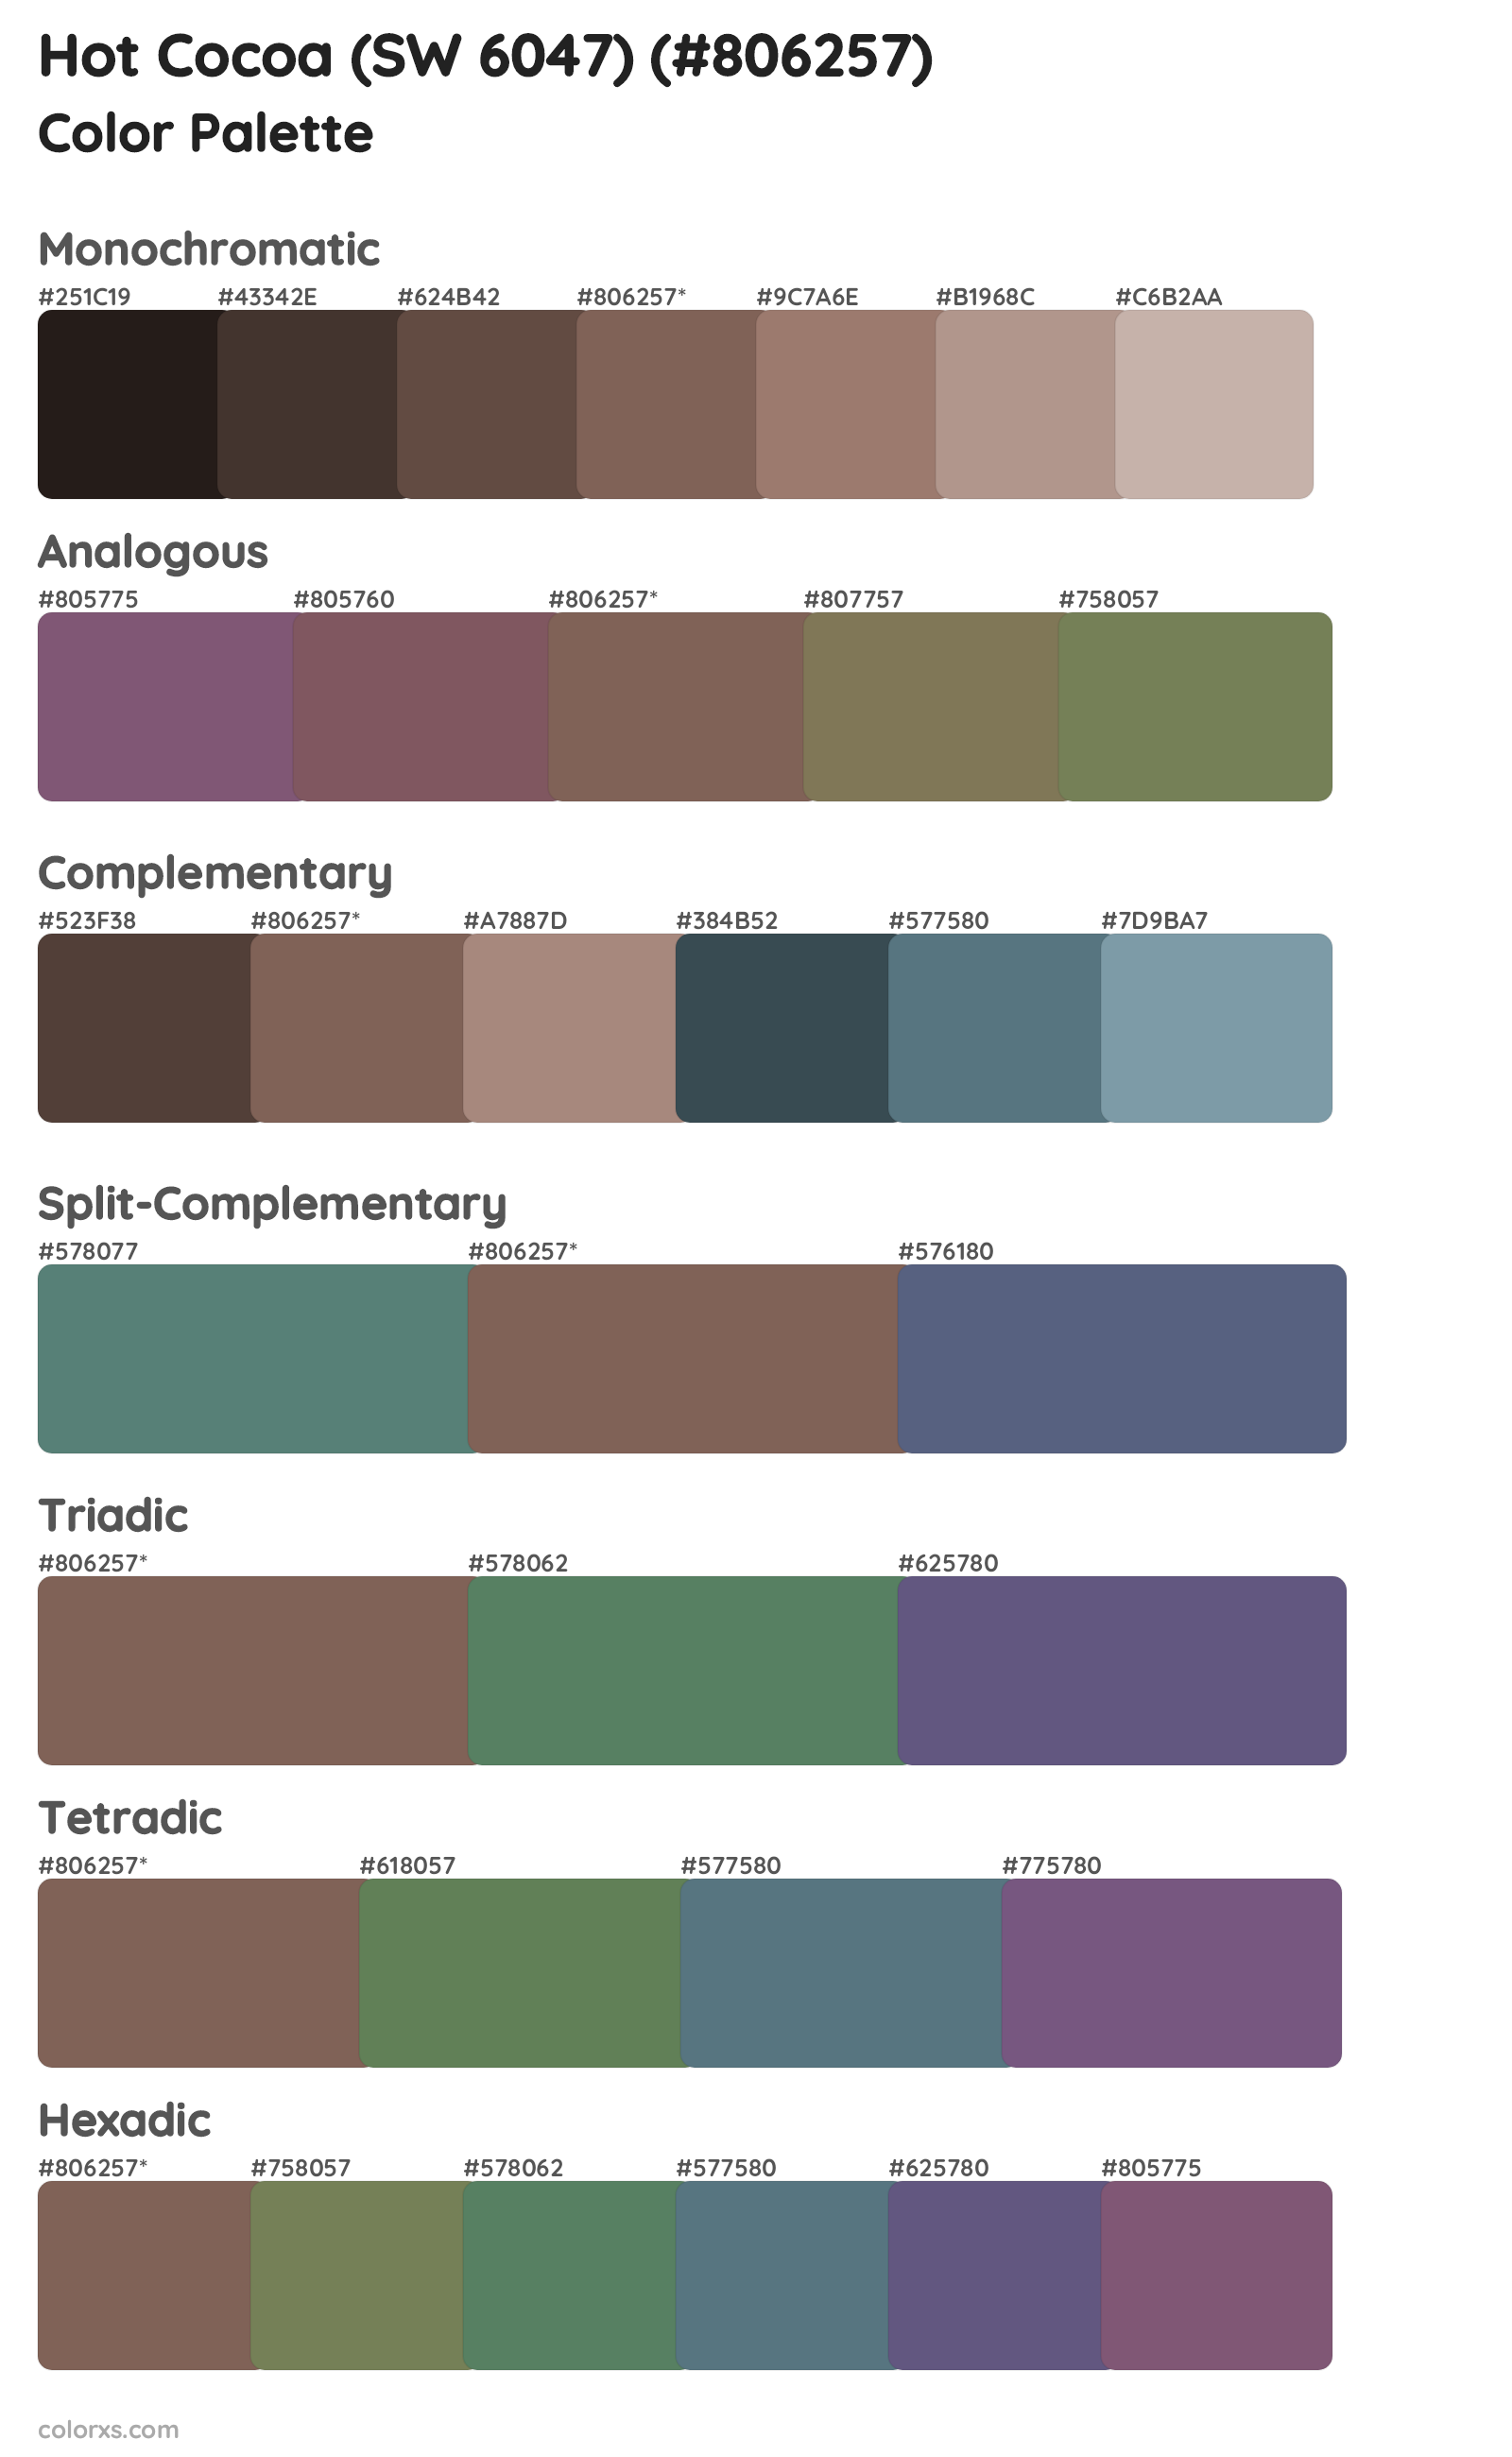 Hot Cocoa (SW 6047) Color Scheme Palettes